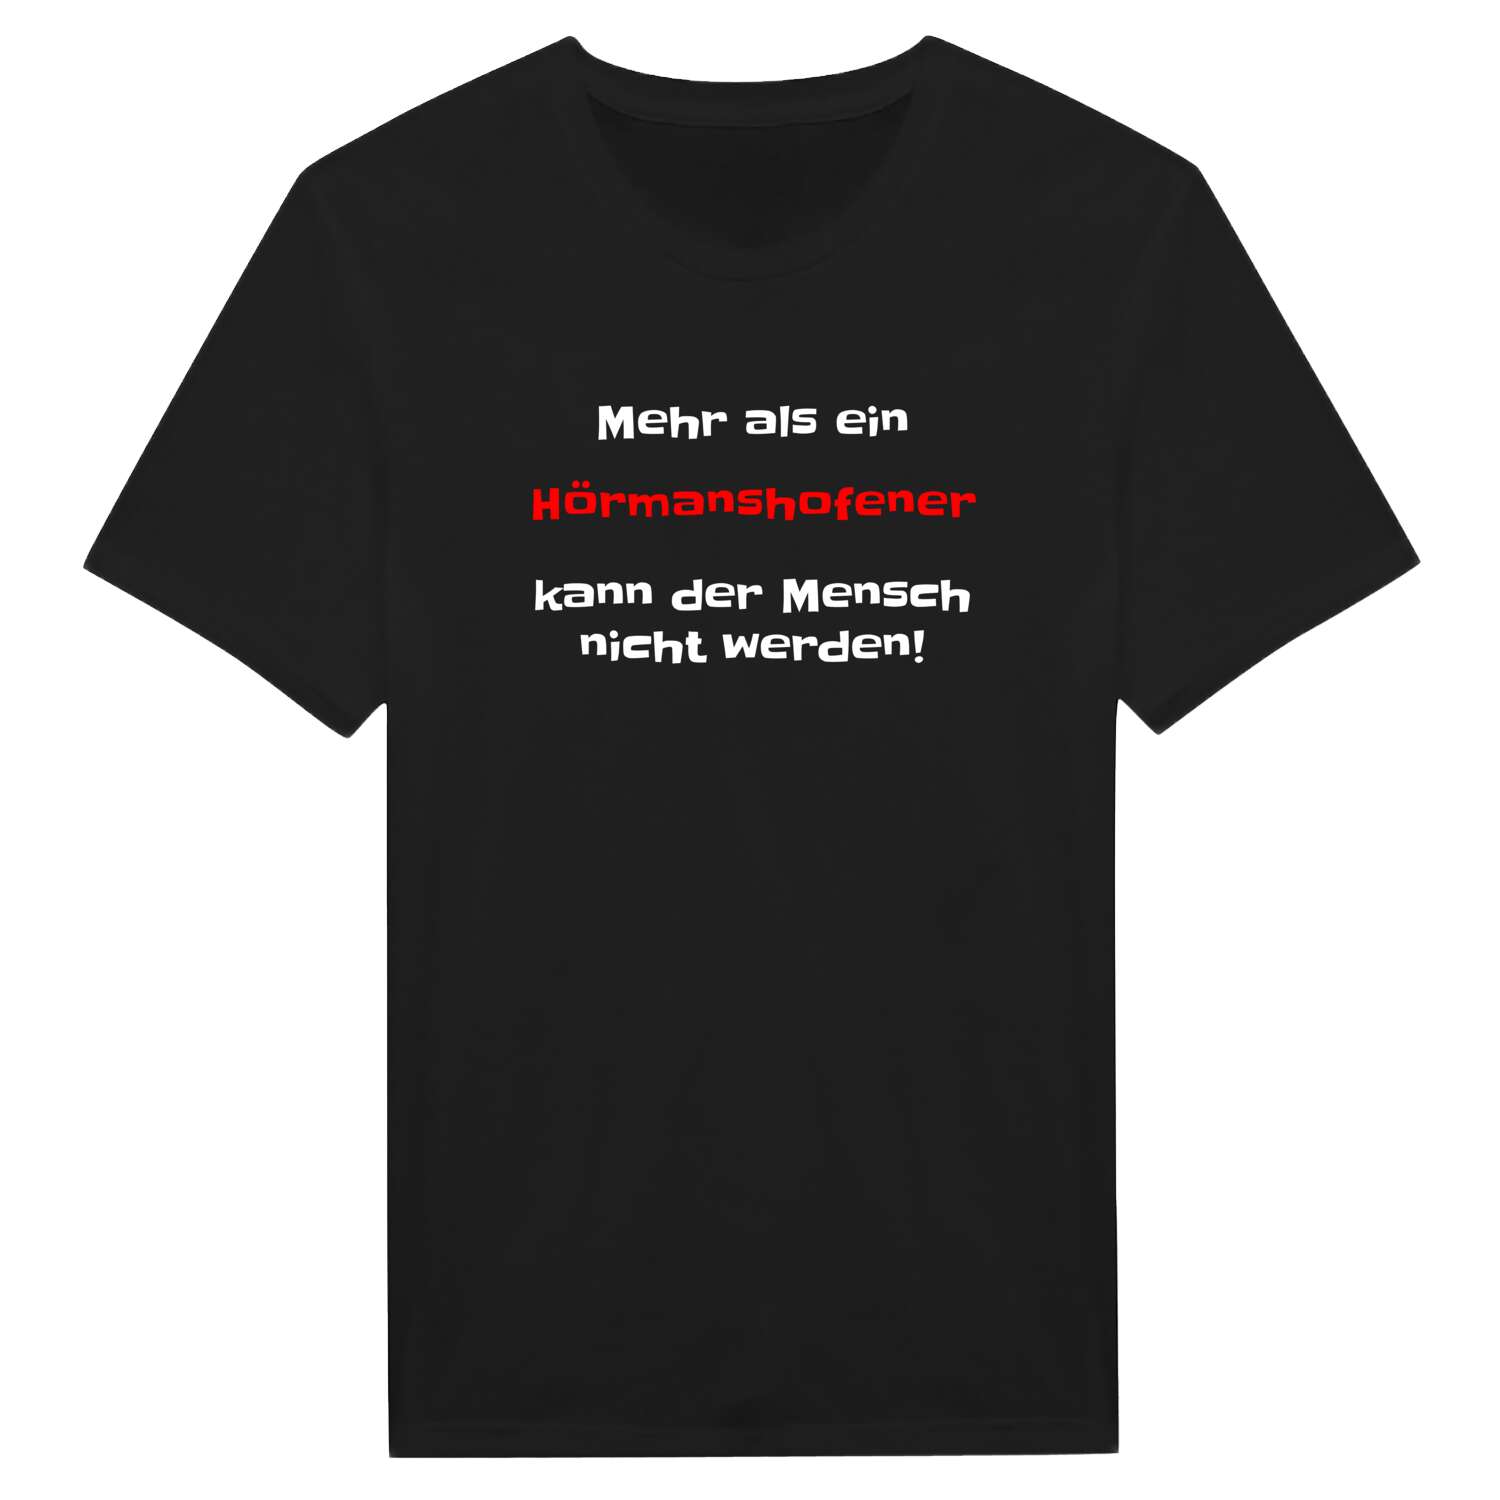 Hörmanshofen T-Shirt »Mehr als ein«